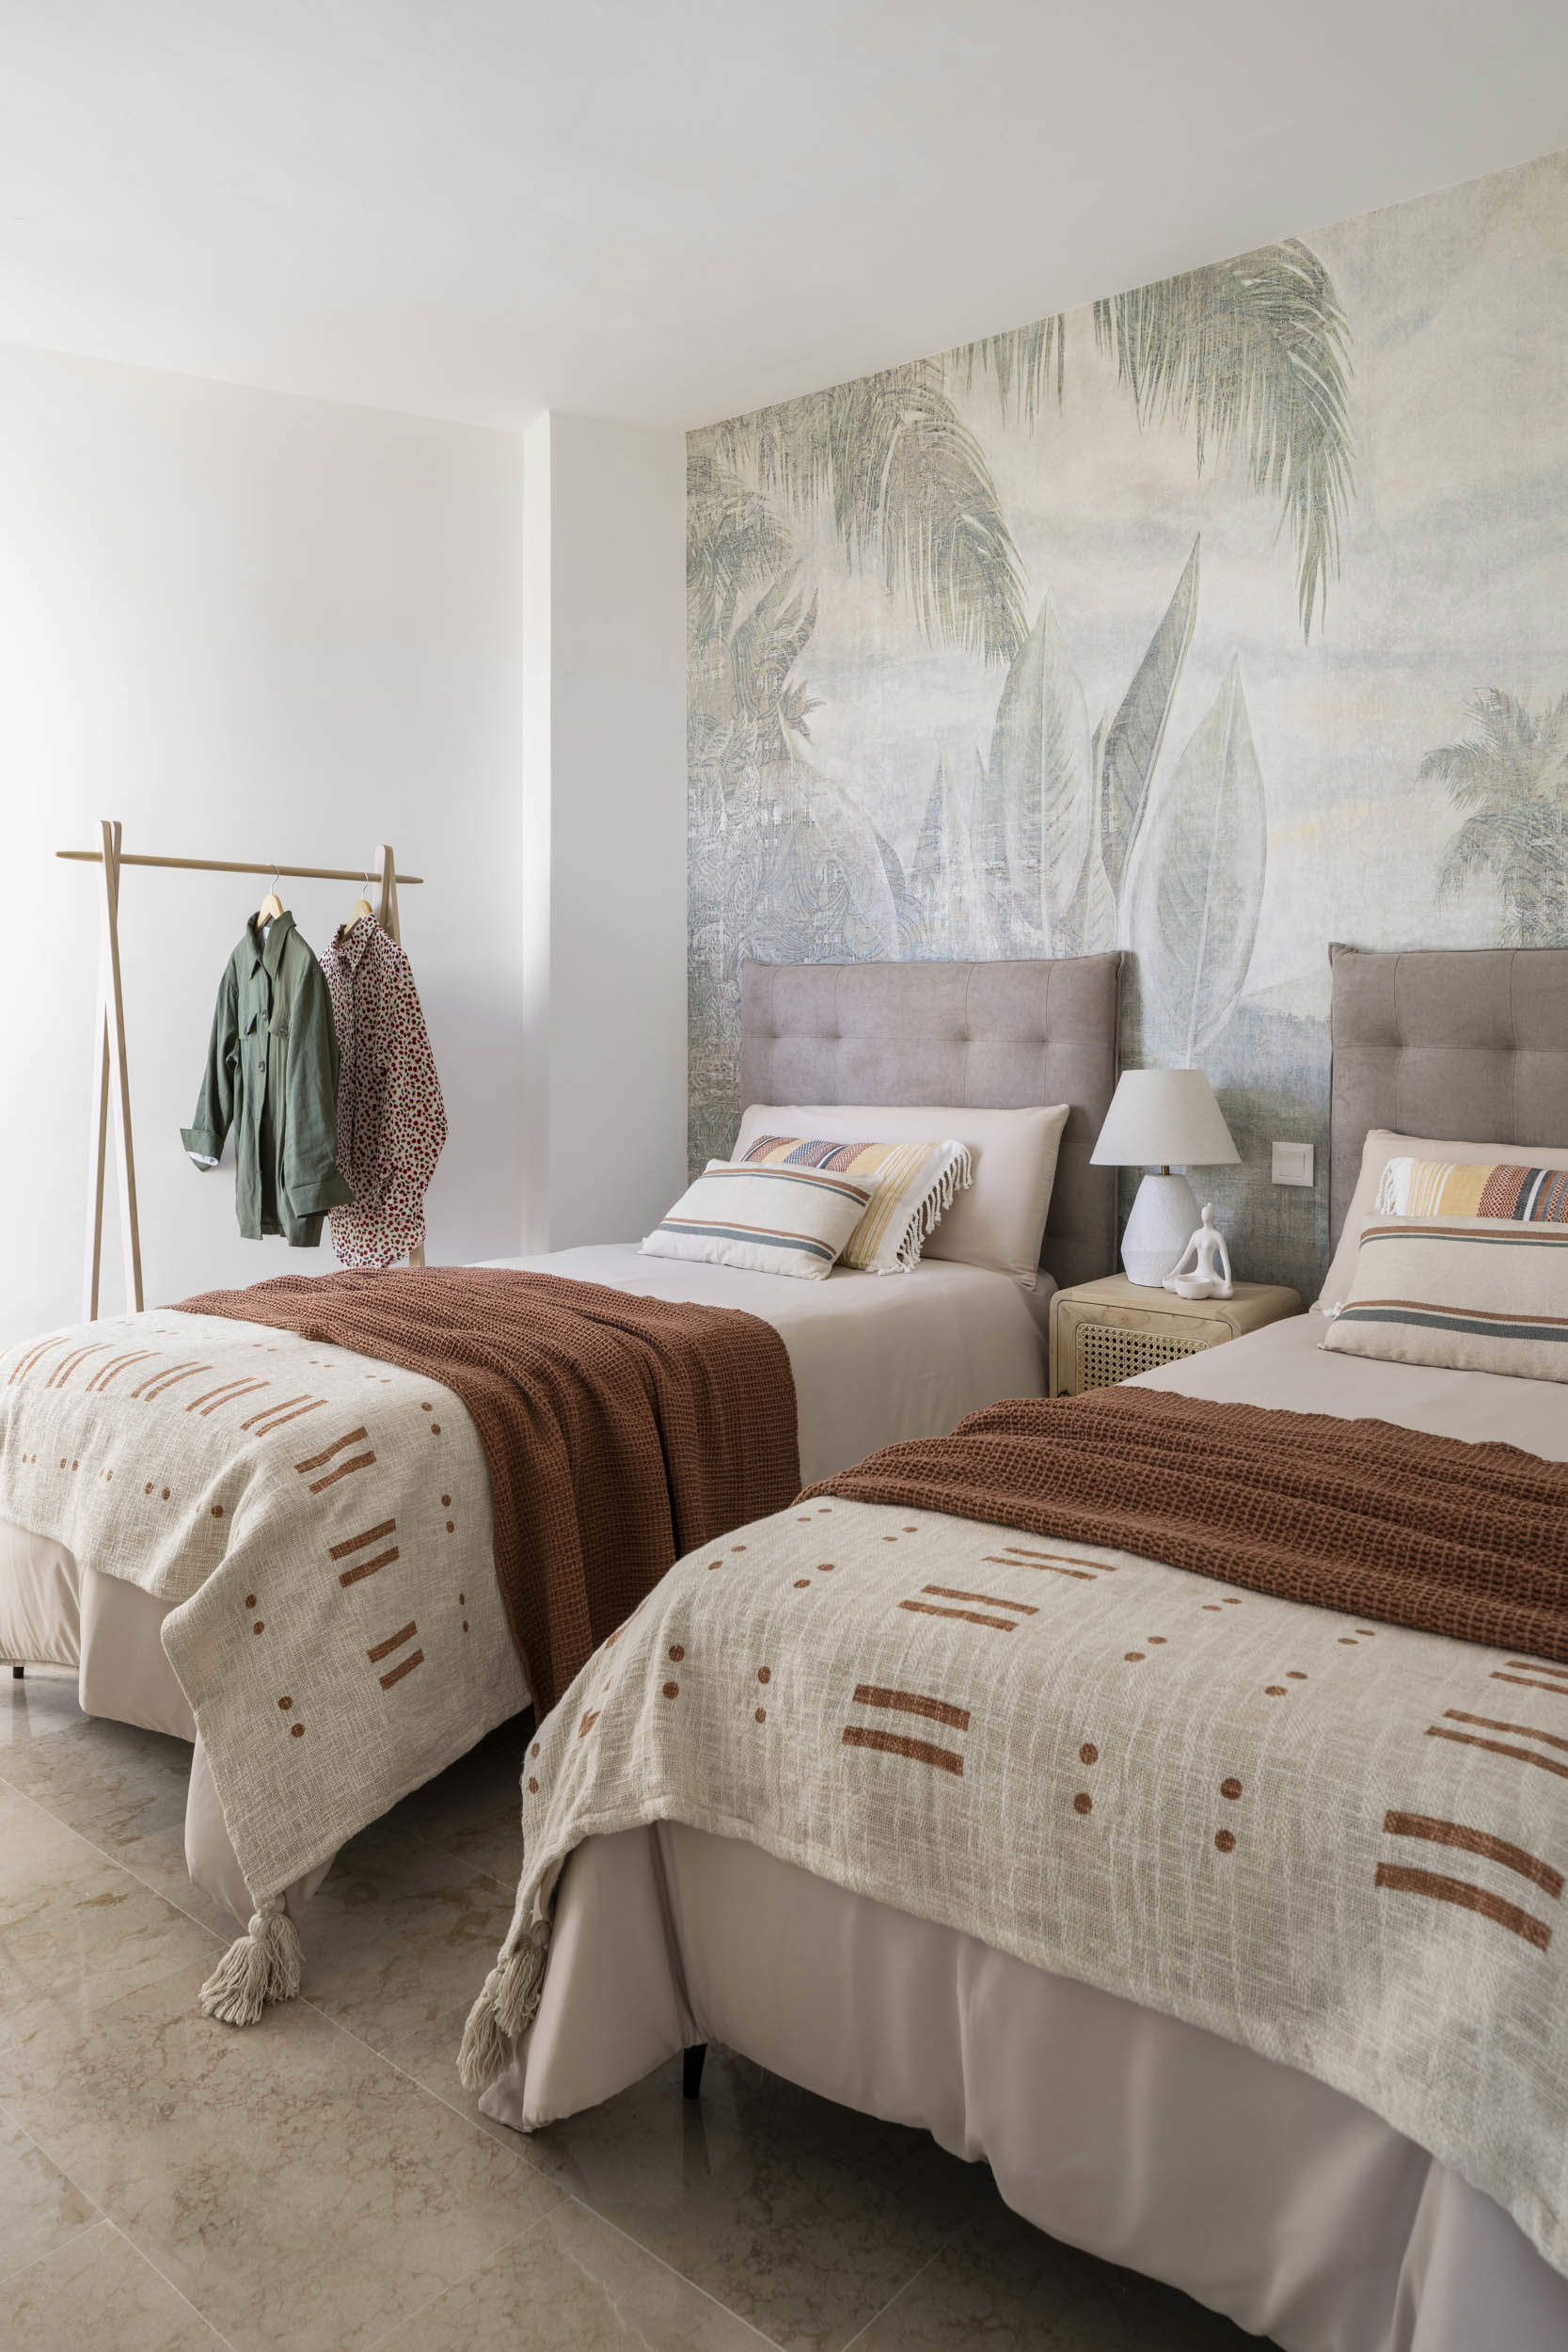 Habitación de camas individuales, cabeceros tapizados y papel pintado.